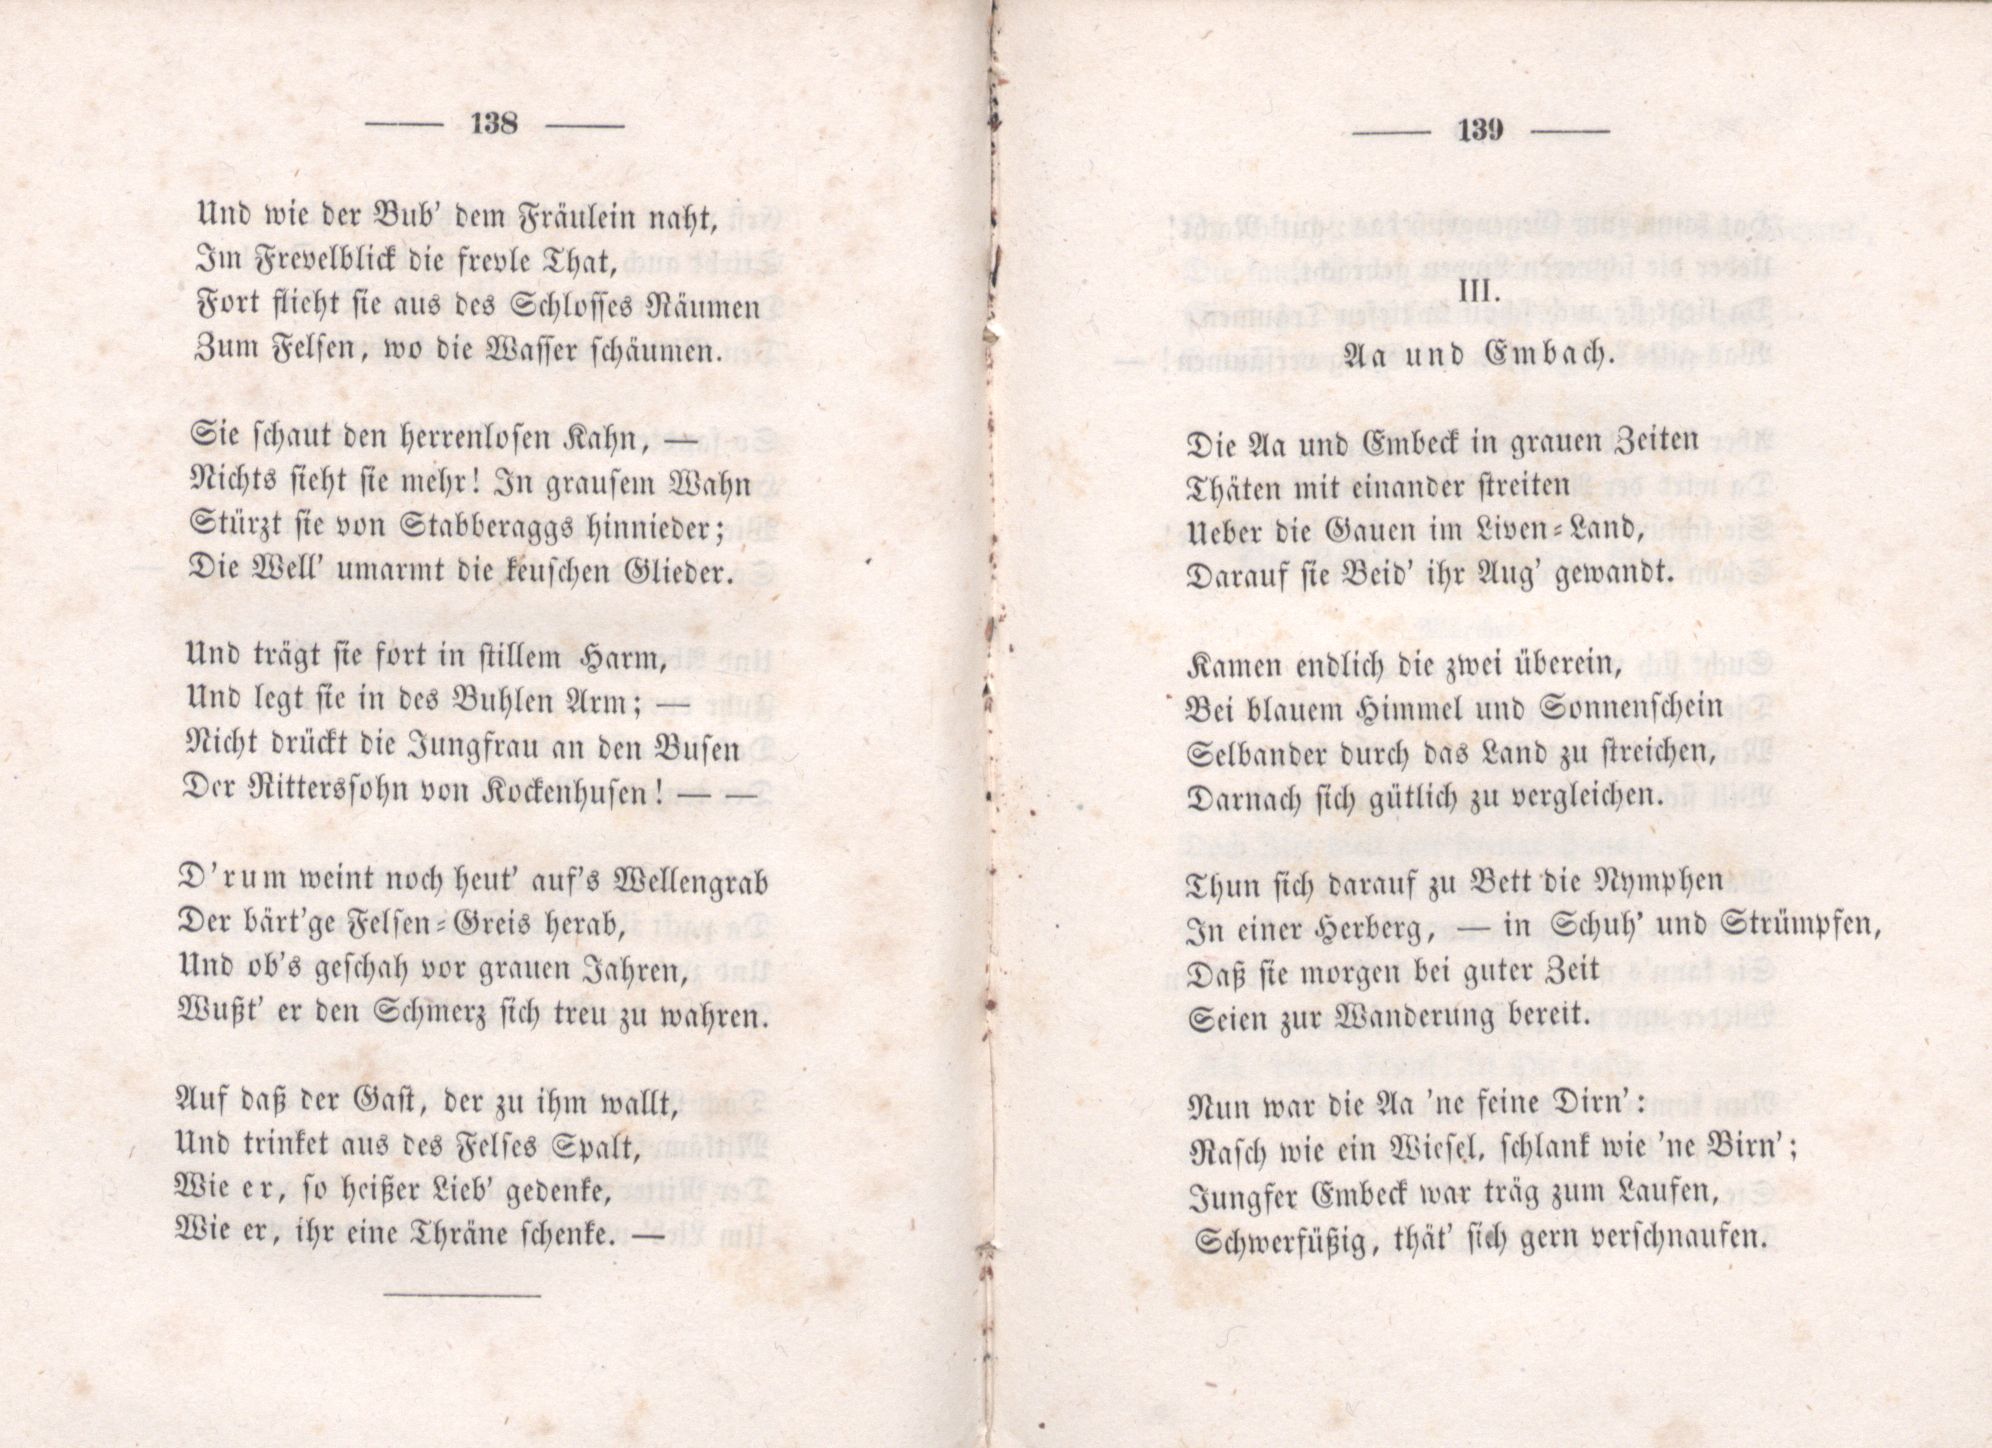 Aa und Embach (1851) | 1. (138-139) Haupttext